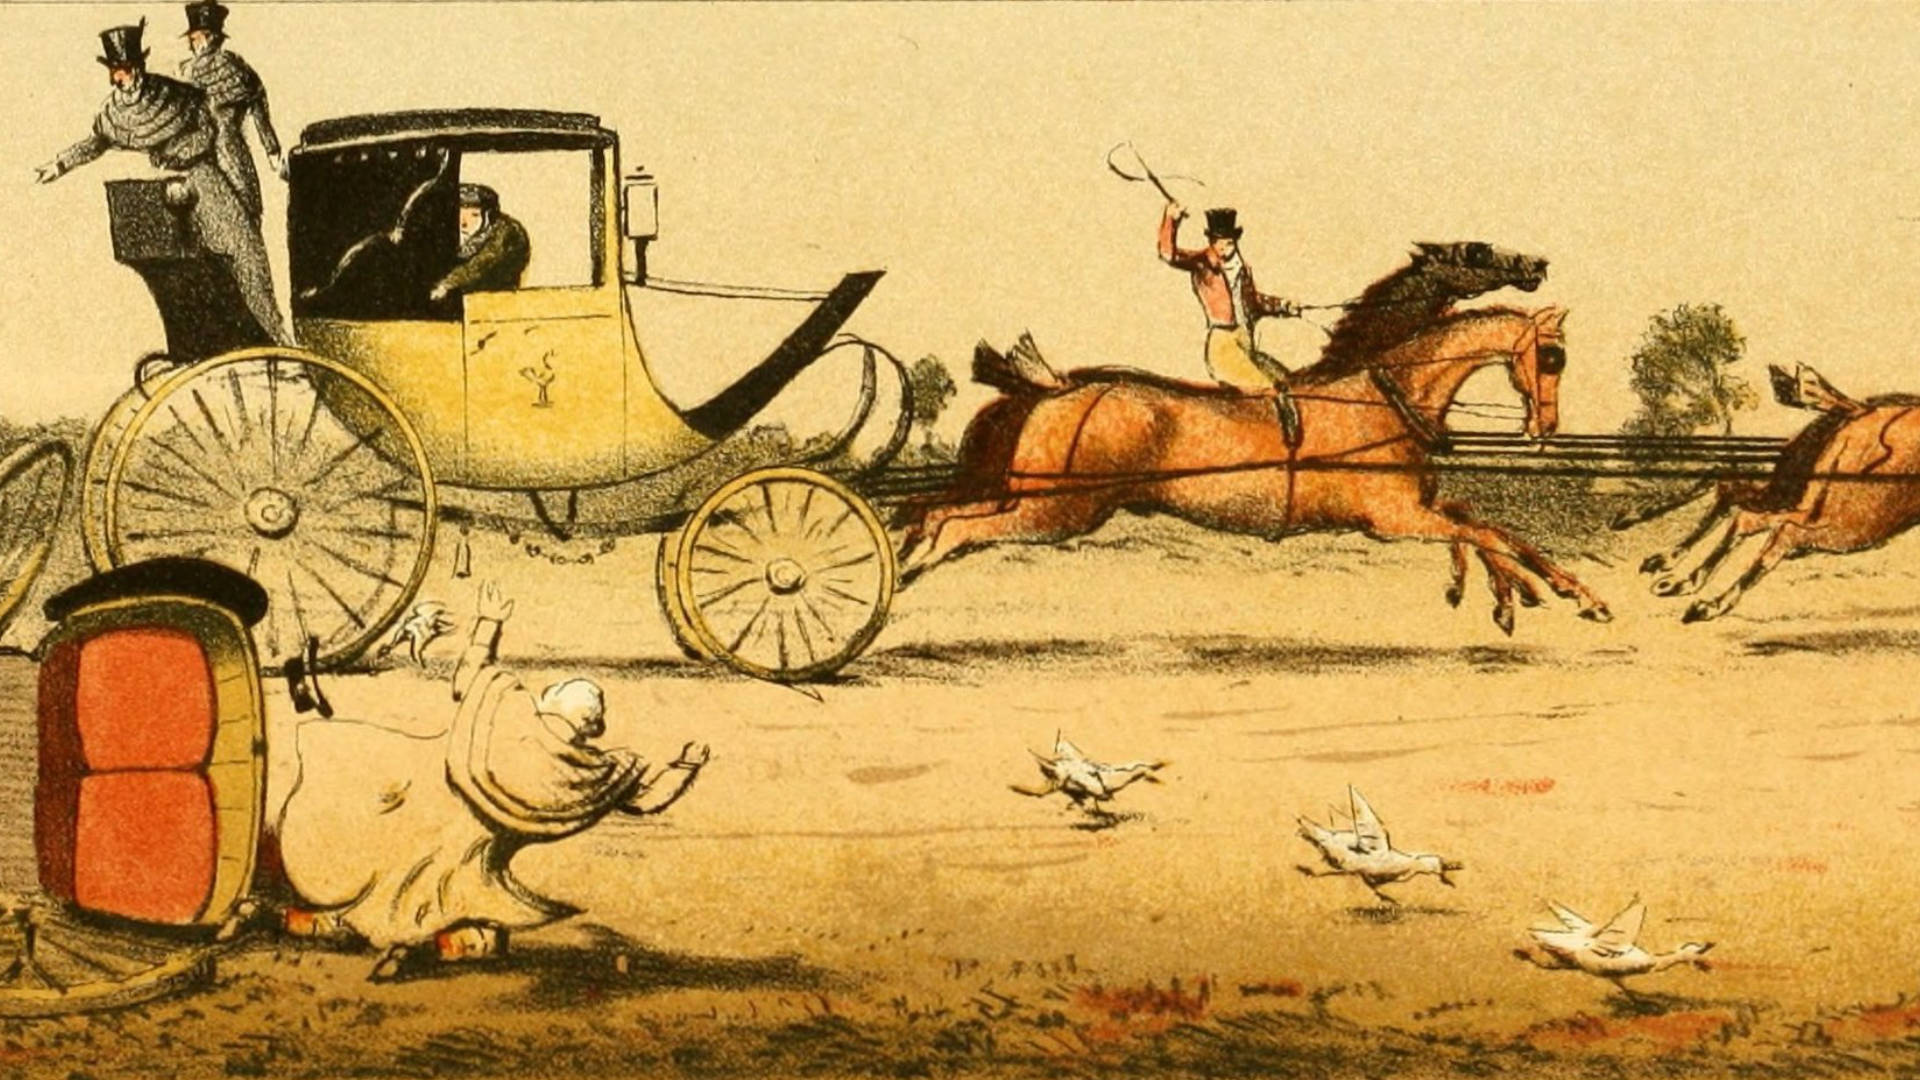 Darstellung einer britischen Postchais in einem Stich von 1876.